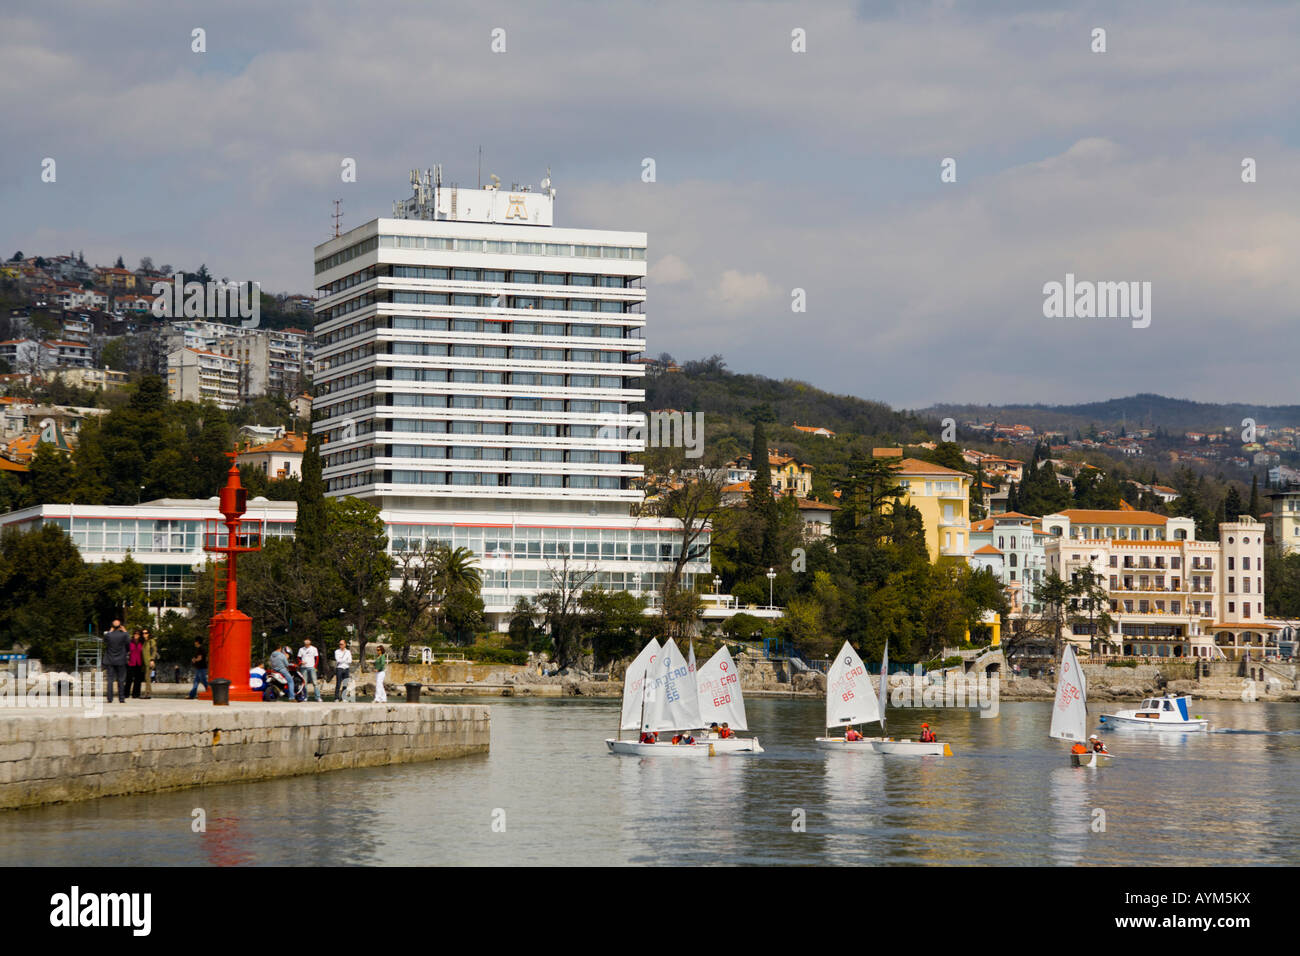 Hotel Ambasador, Opatija in Croatia, small-boat regatta finale in foreground Stock Photo